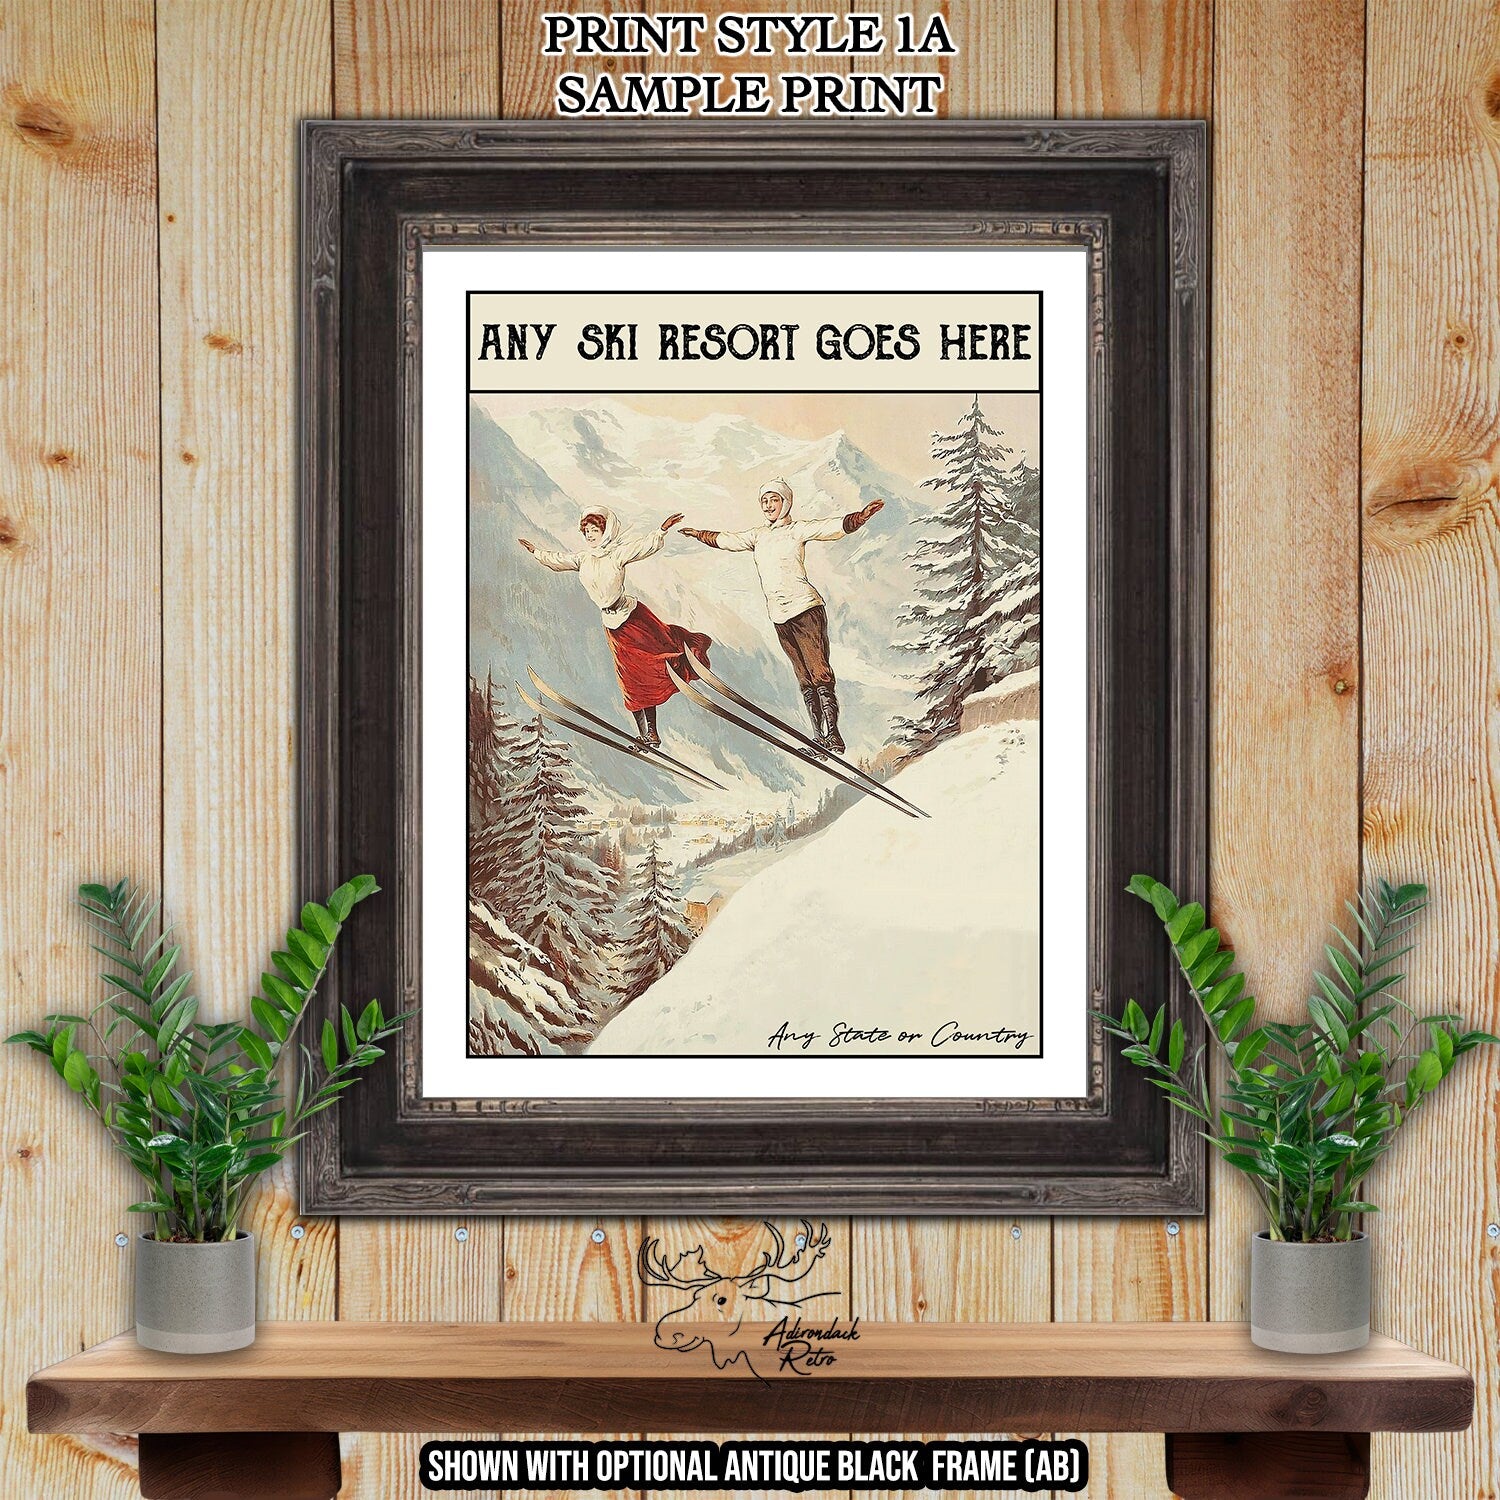 Zweisimmen Switzerland Retro Ski Resort Art Print